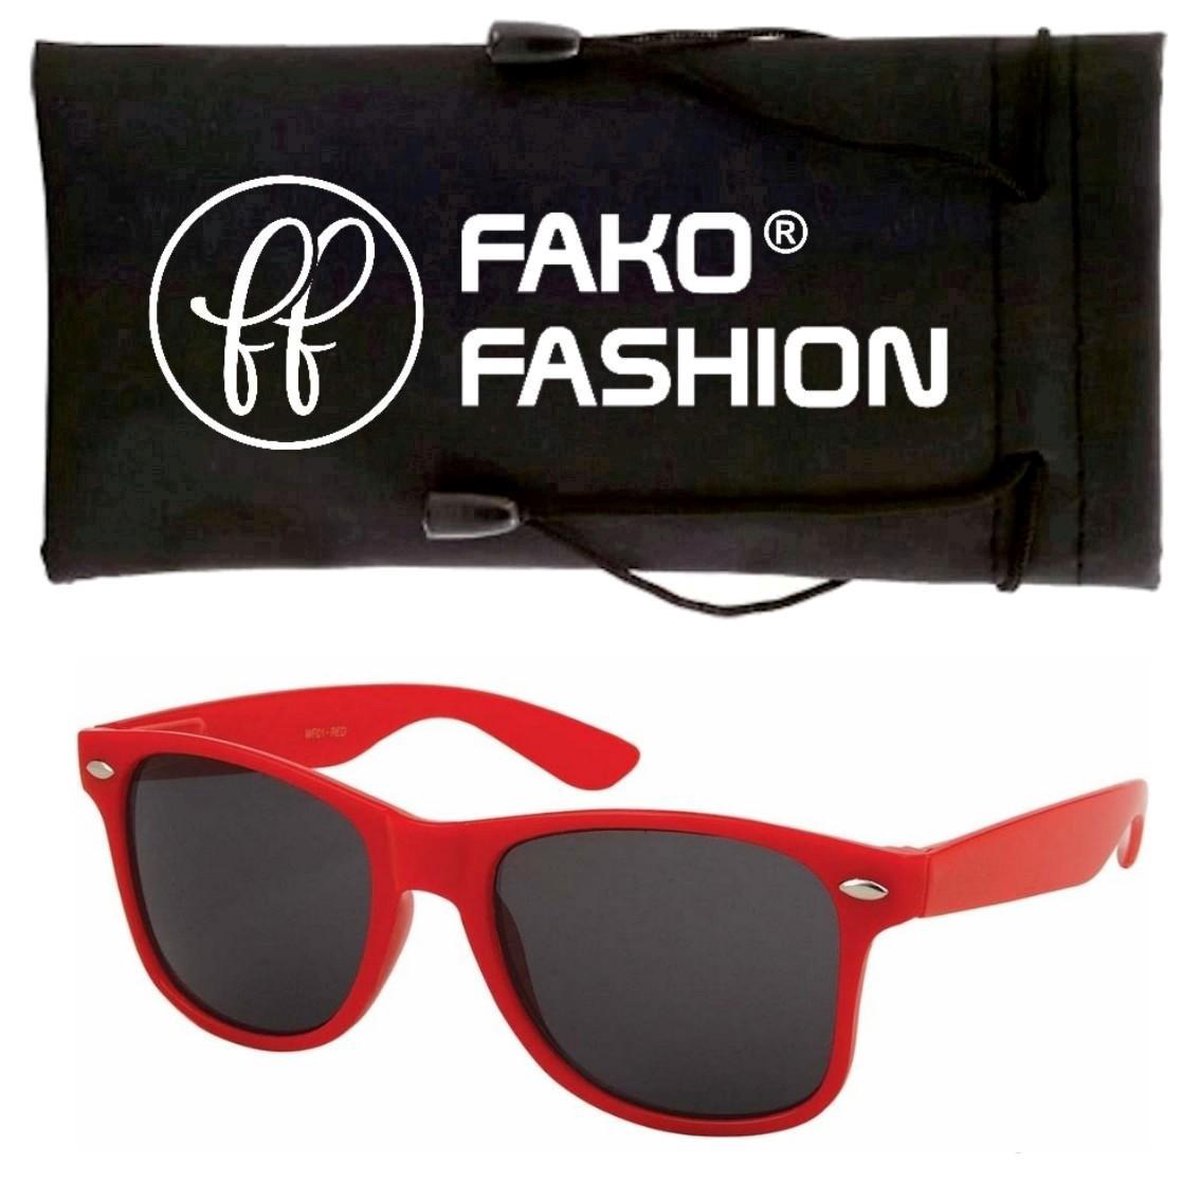 Fako Fashion® - Kinder Zonnebril - Rood